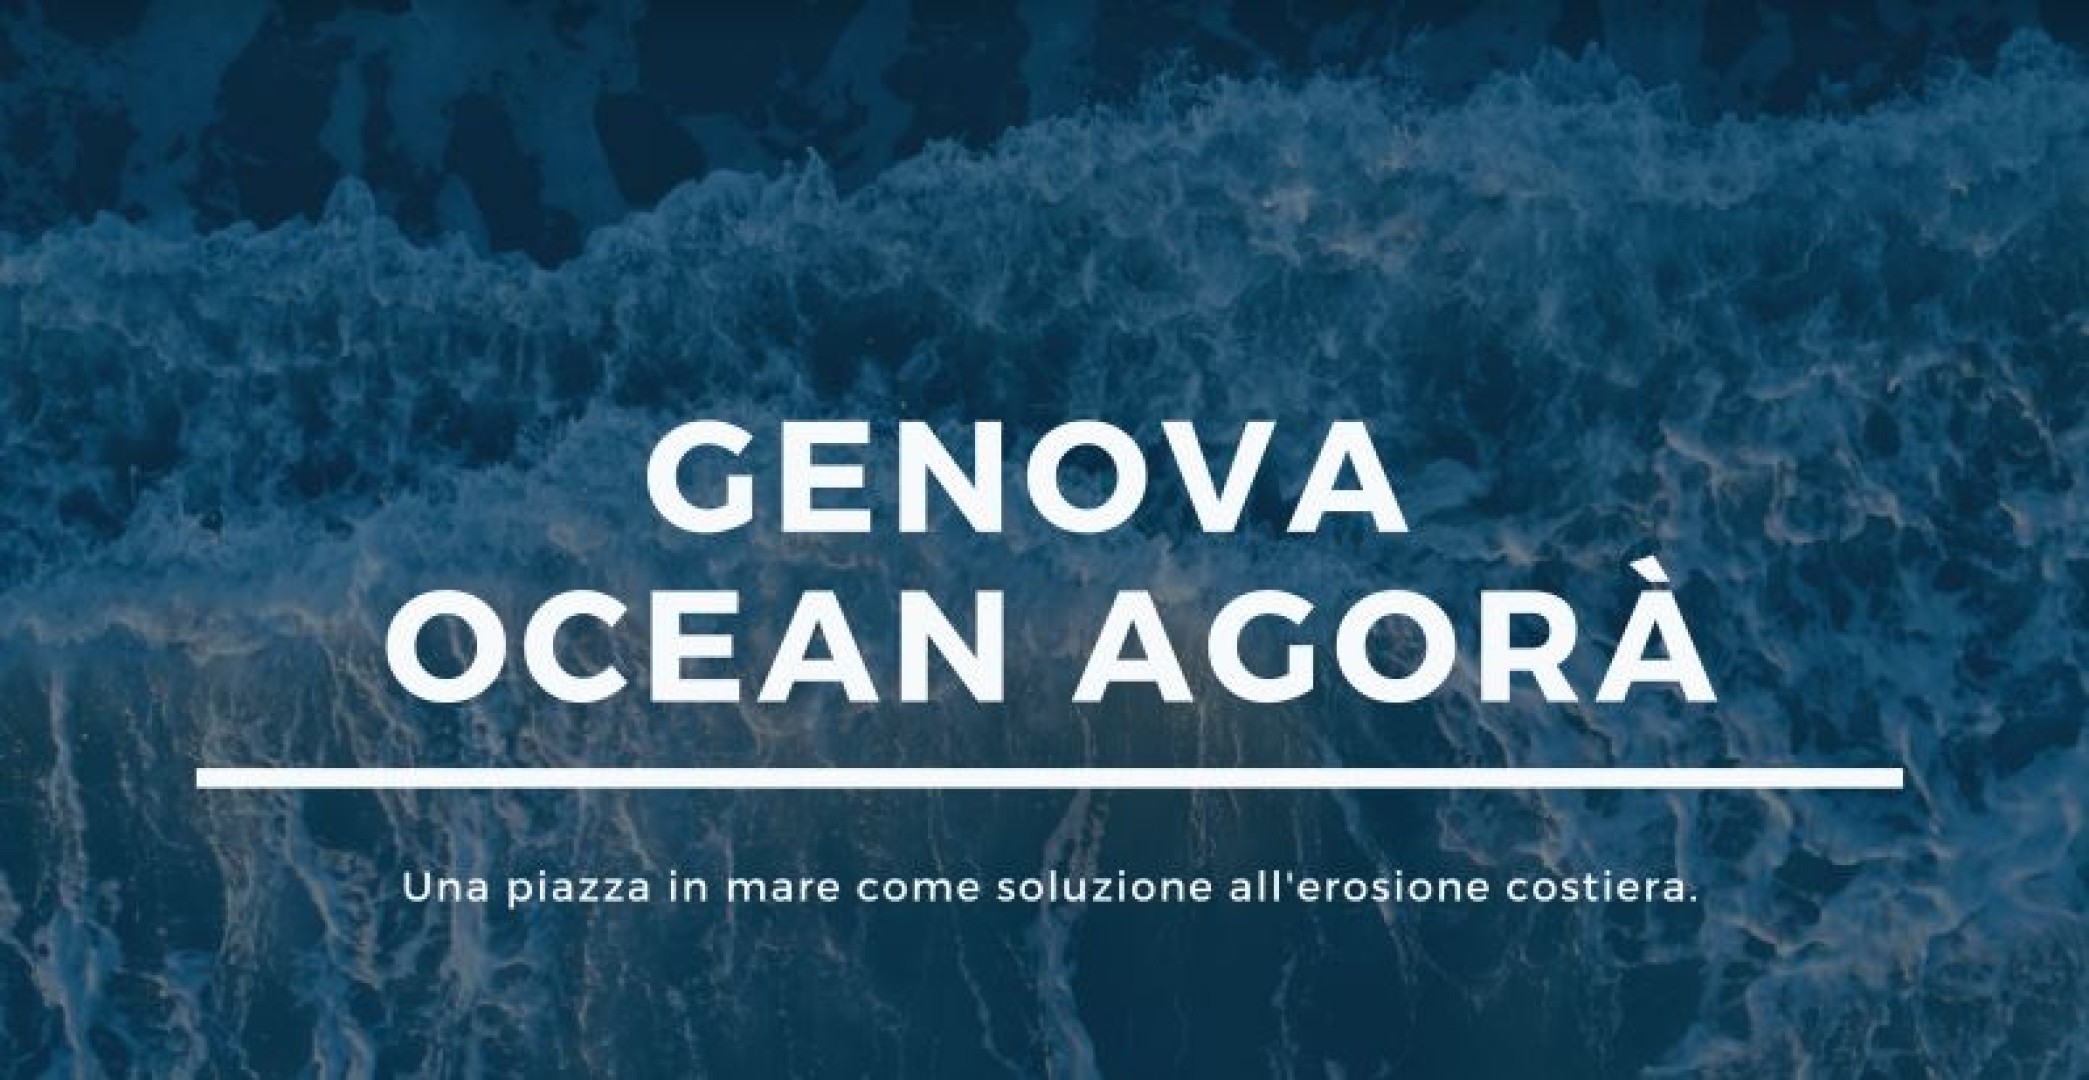 Genova Ocean Agorà: proteggere il litorale dall’erosione costiera